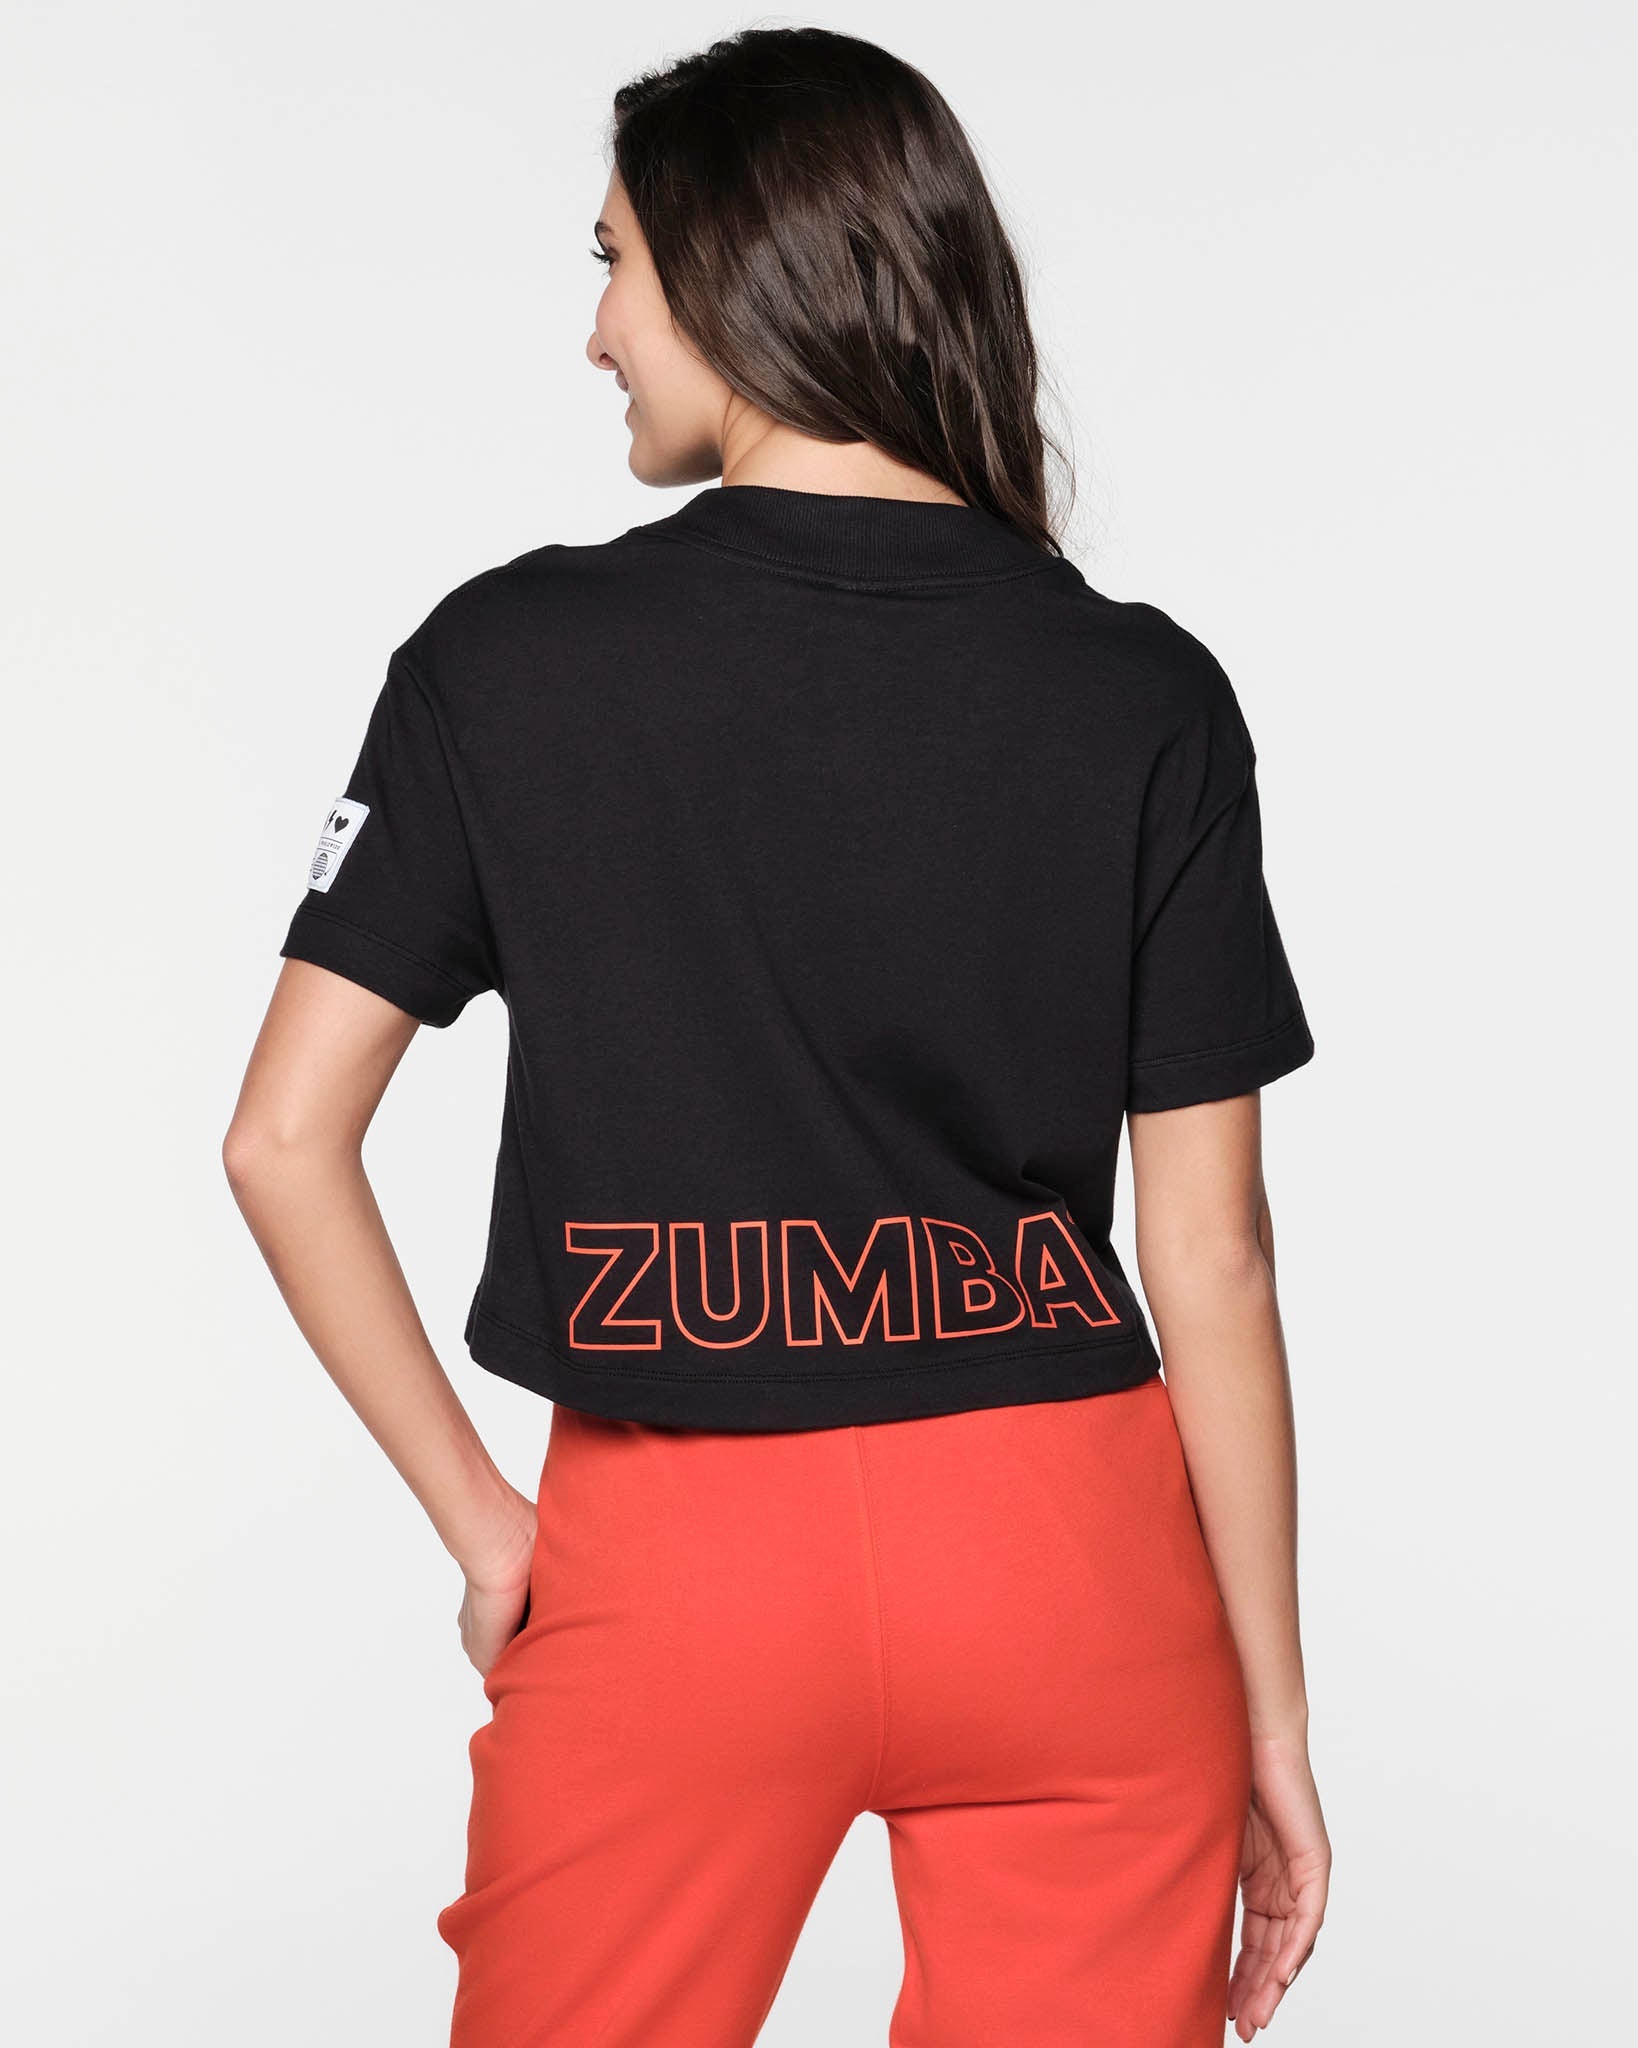 Zumba Now, Wine Later Tank Top, Zumba Workout Shirt, Zumba Tshirt, Zumba  Wear, Zumba Tank Tops, Zumba Outfit, Zumba Shirt, Zumba Mom Shirt 